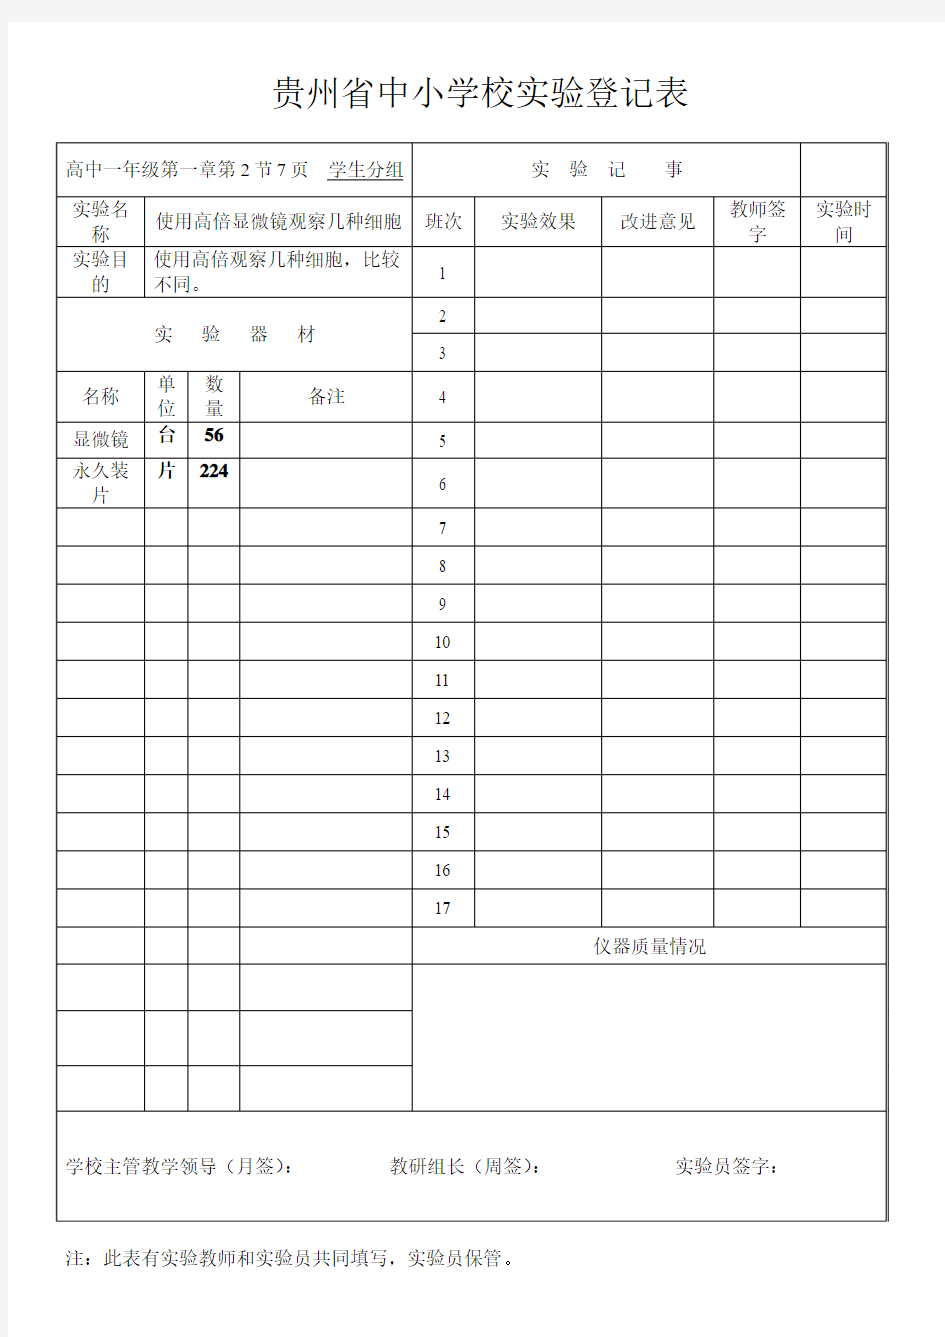 贵州省中小学校实验登记表